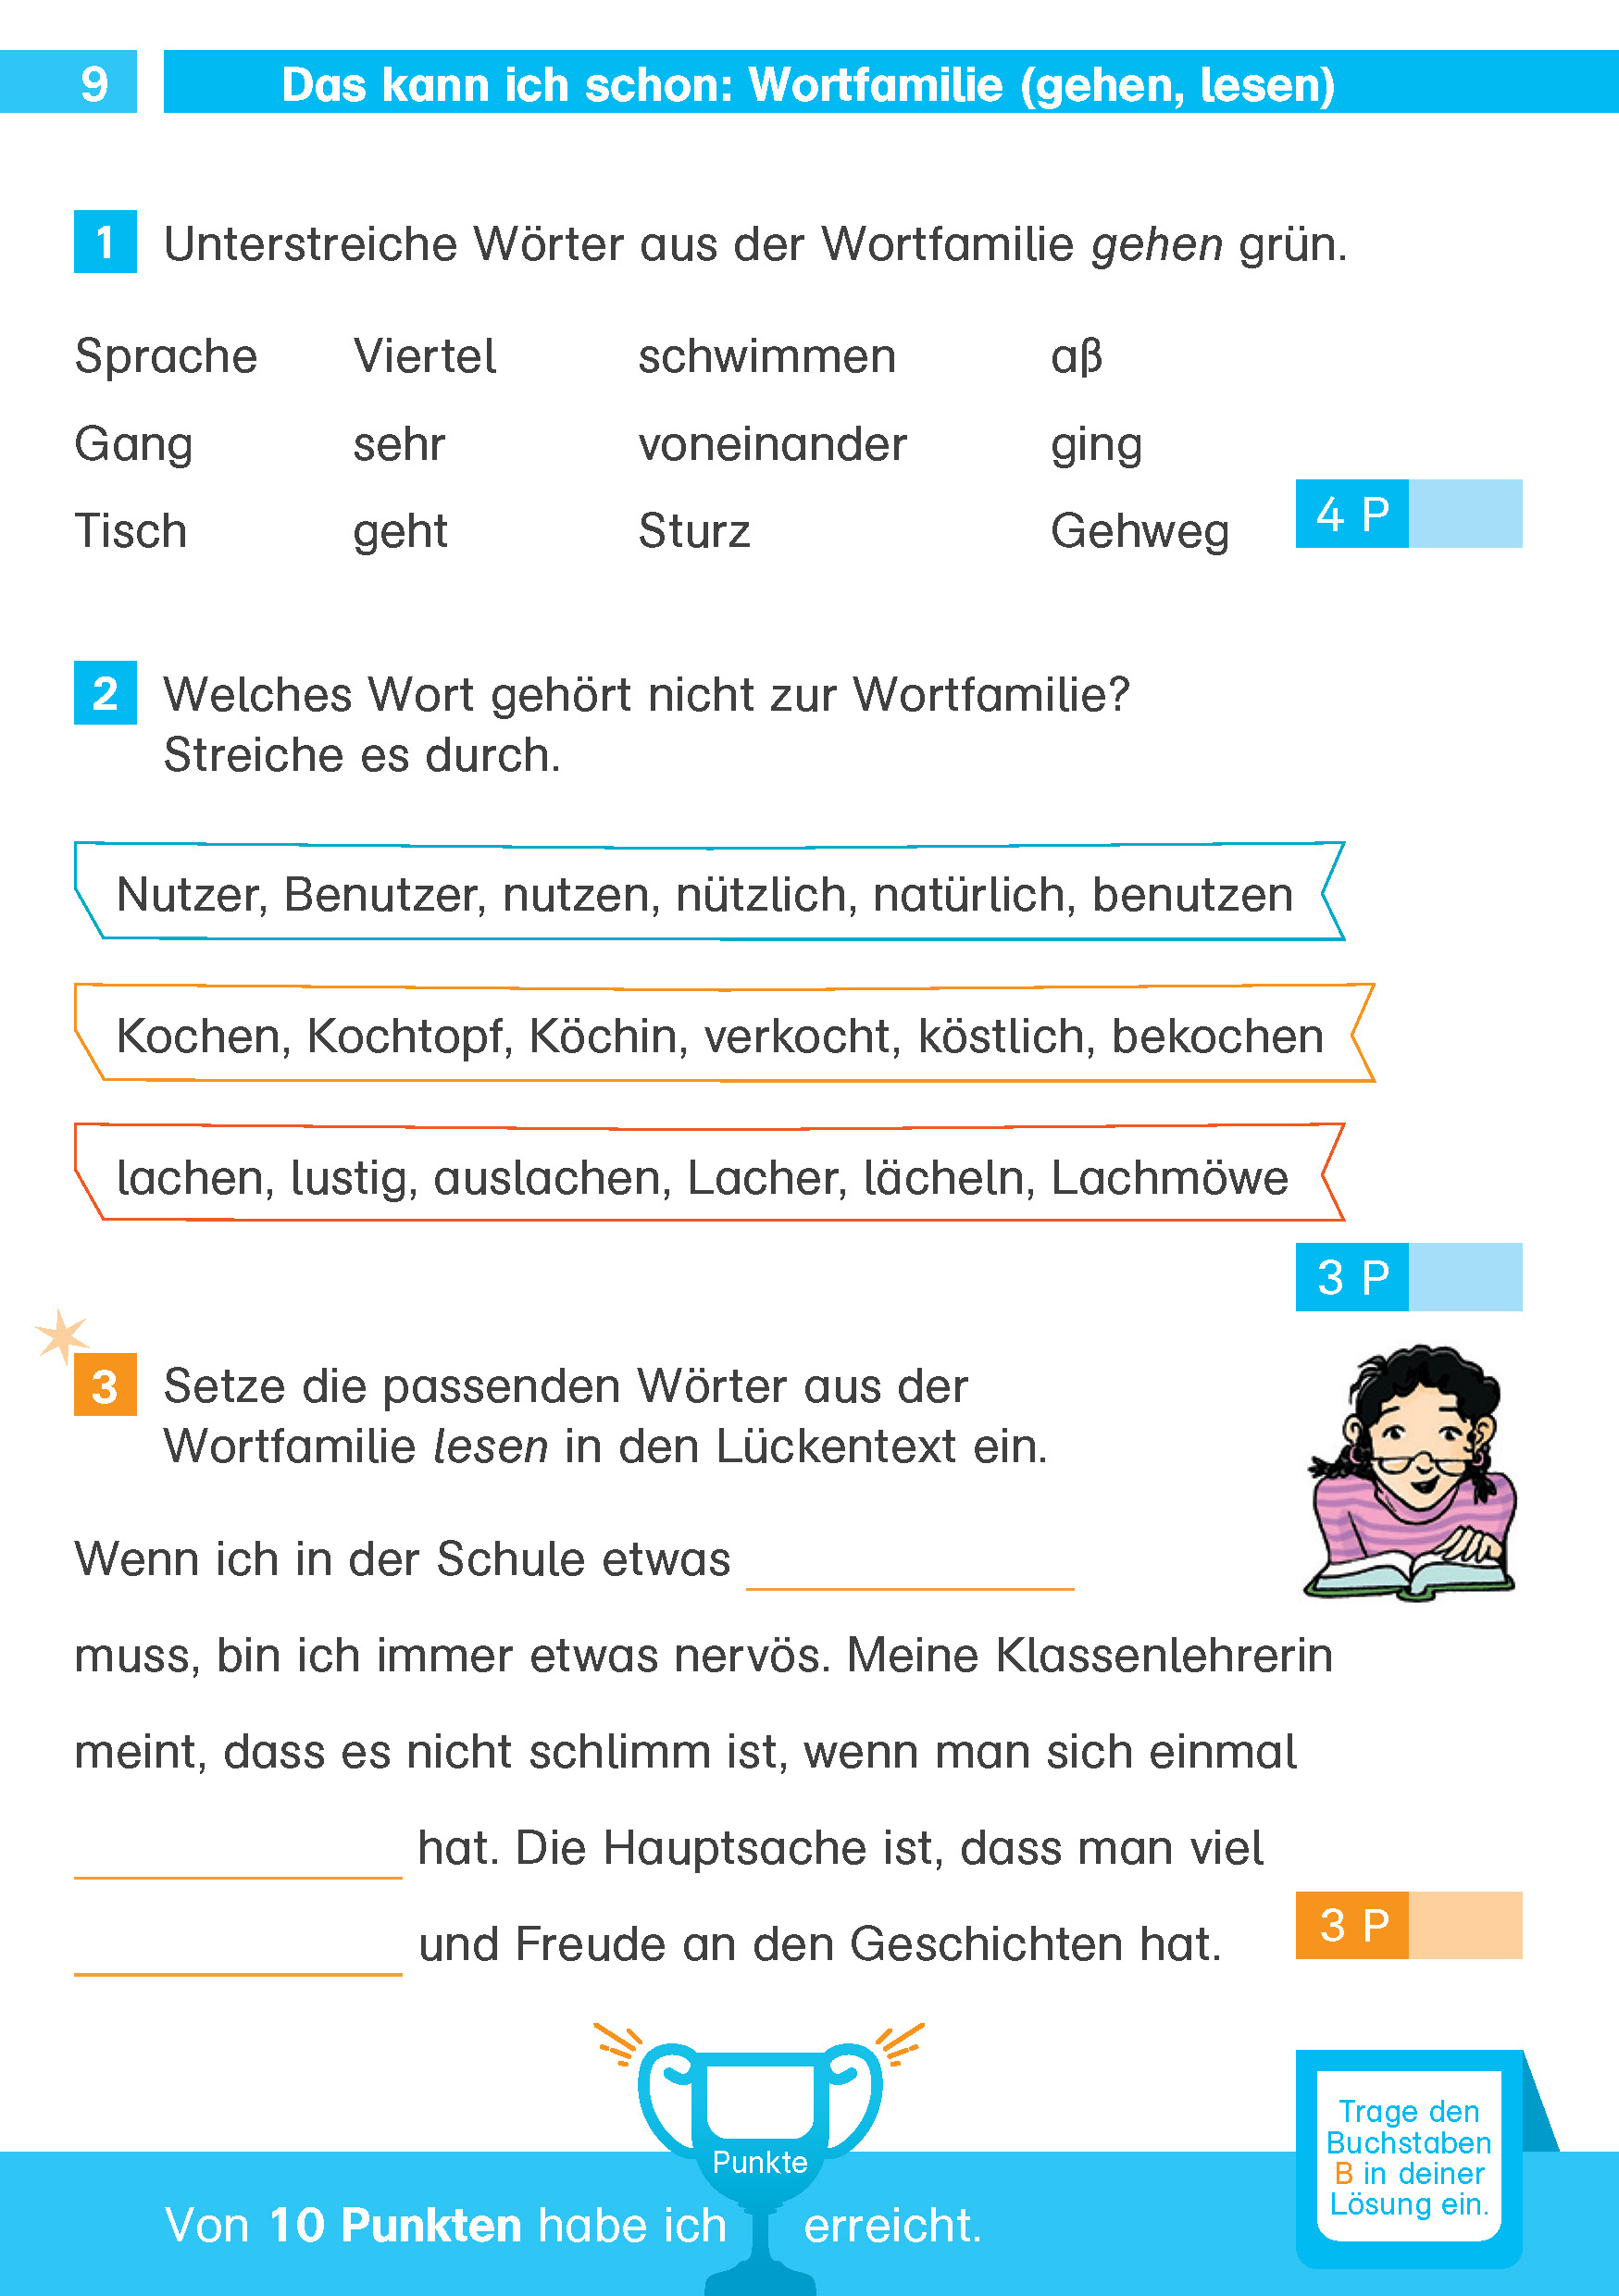 Klett Die Deutsch-Helden: Deutsch-Testblock So gut bin ich! 4. Klasse